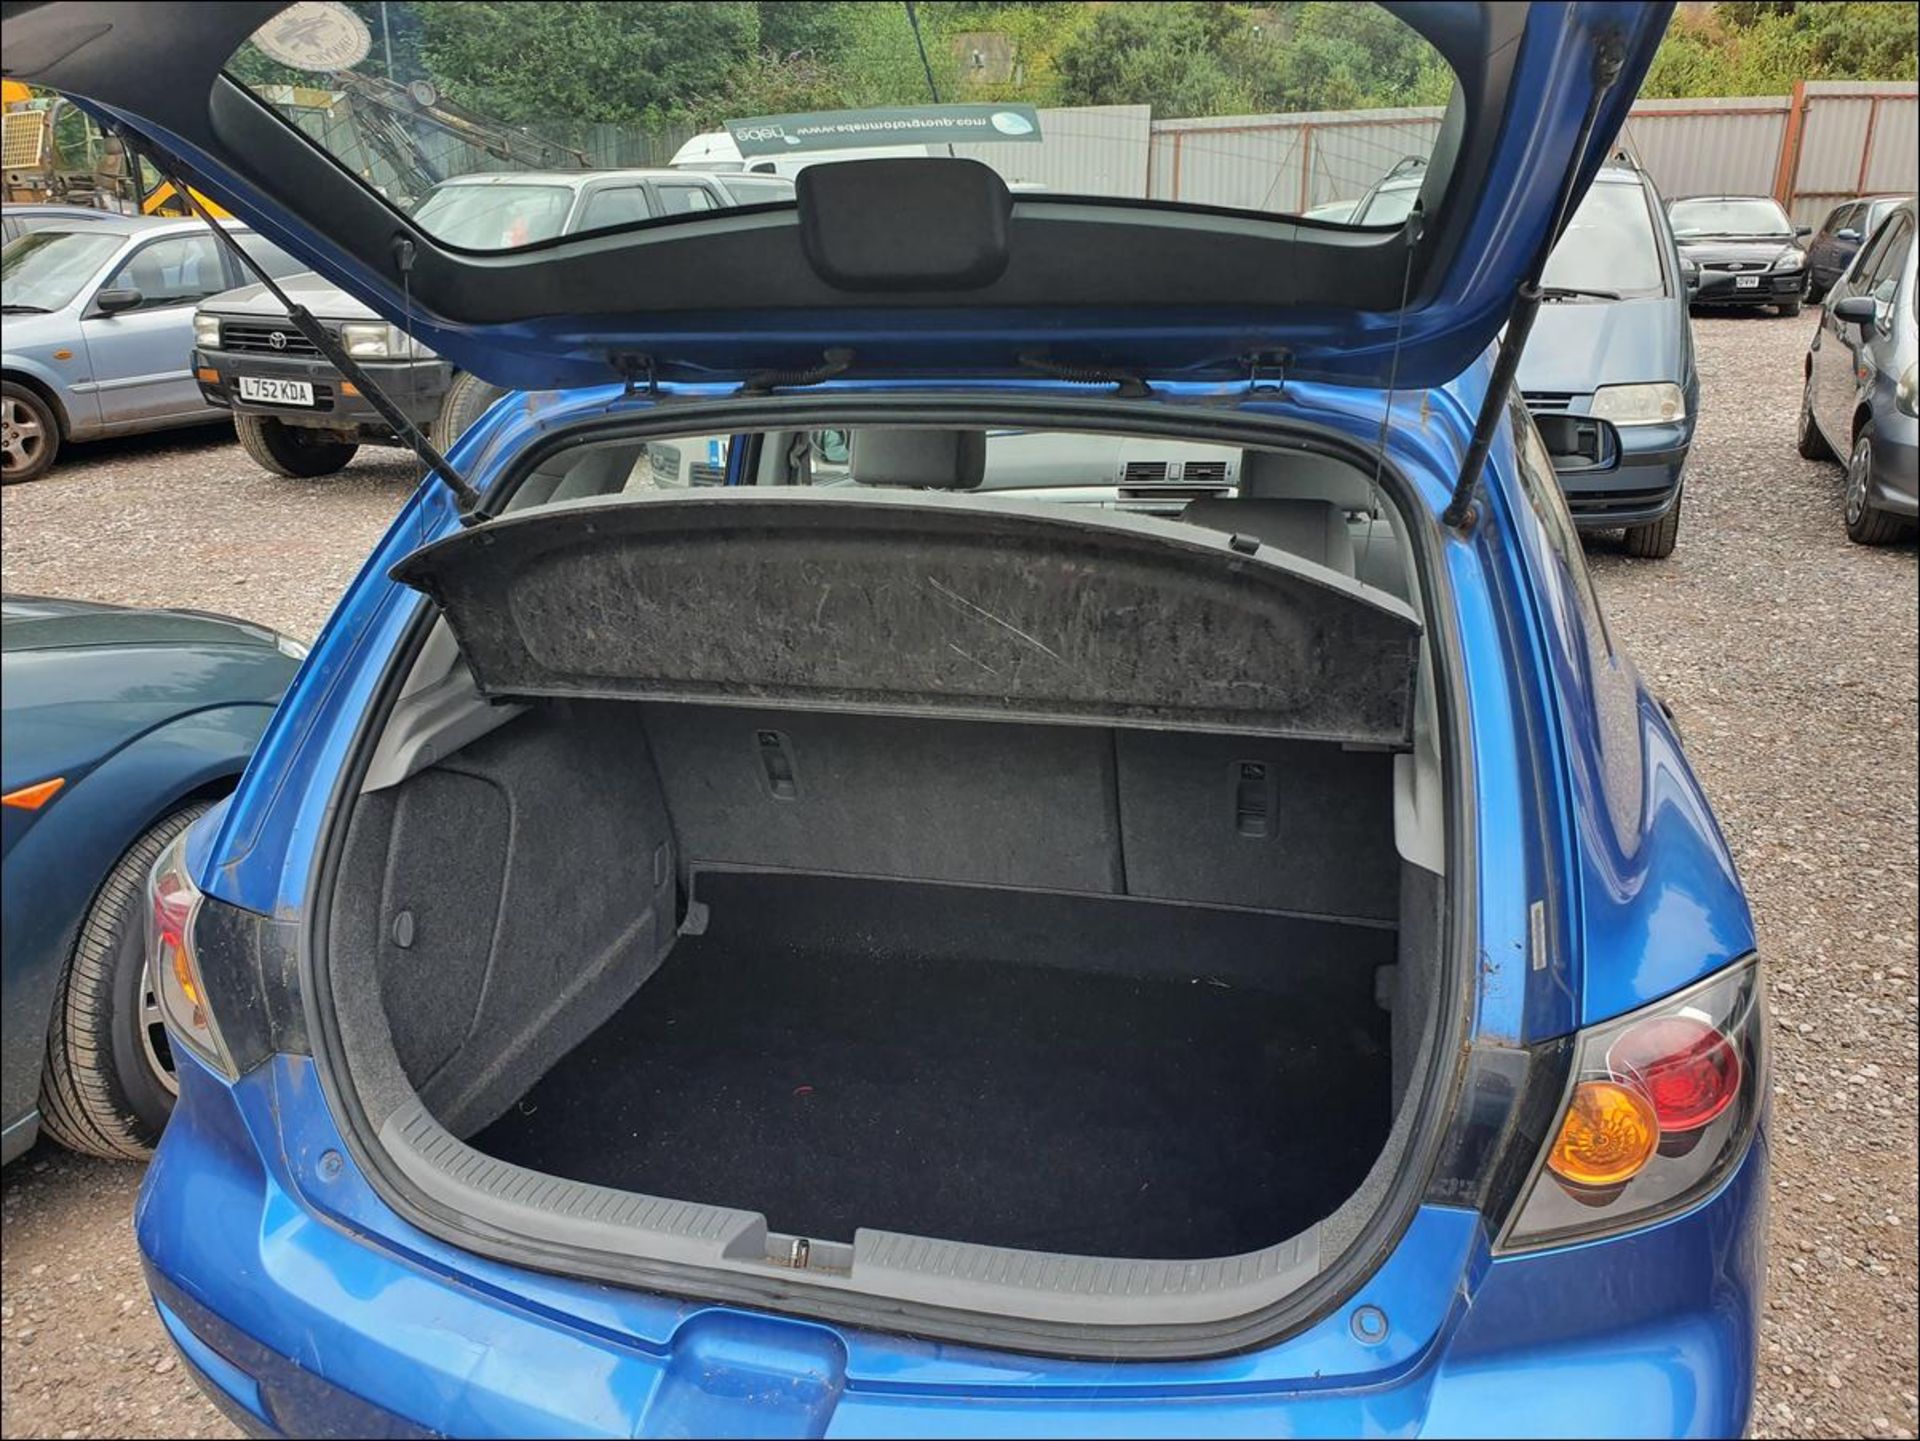 05/55 MAZDA 3 S - 1598cc 5dr Hatchback (Blue, 115k) - Image 6 of 11